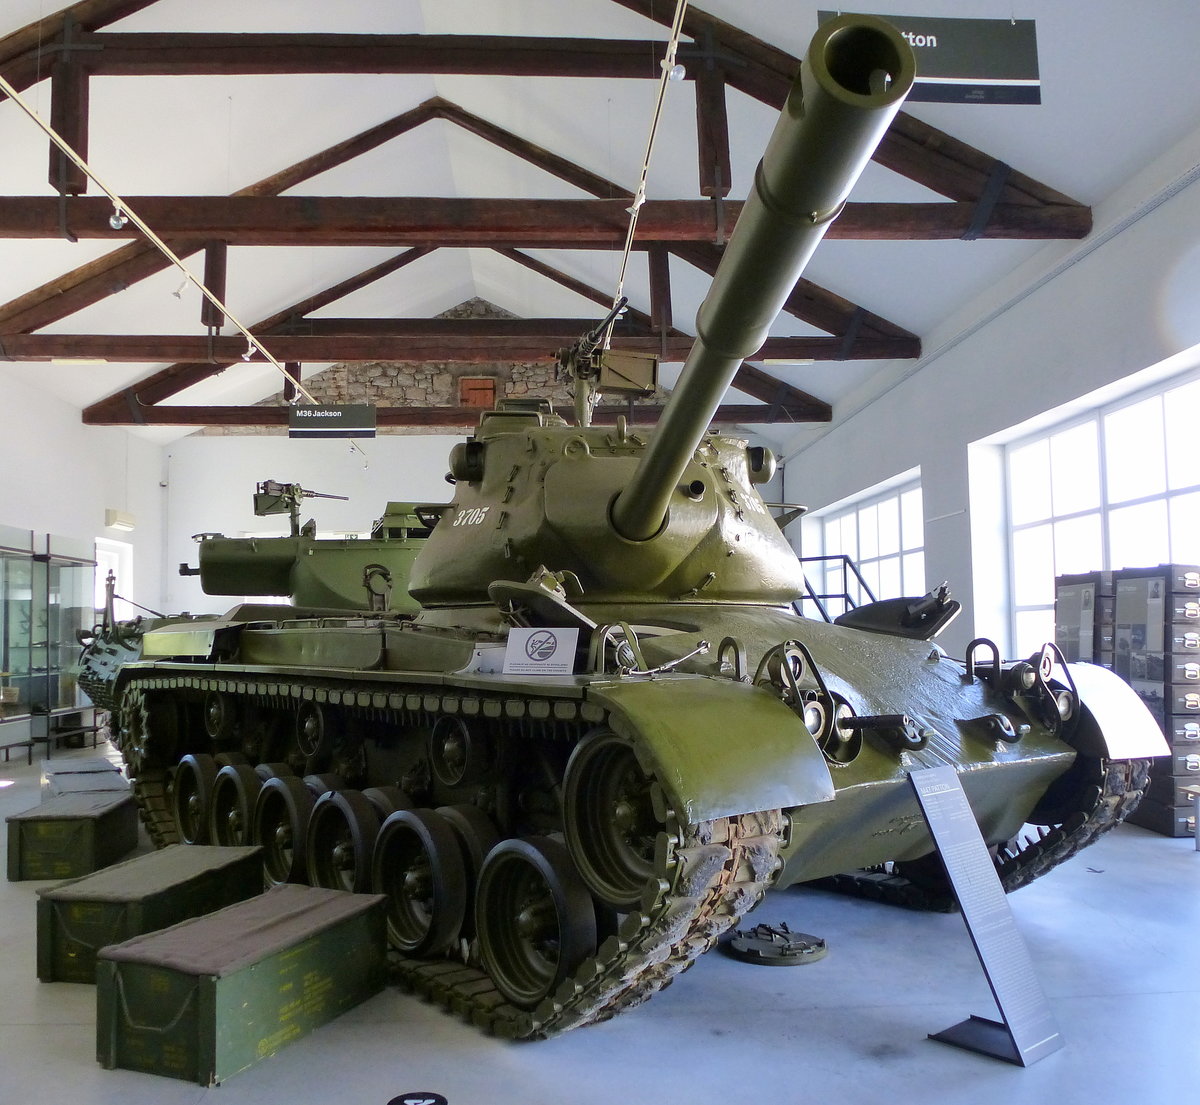 M47 Patton, US-amerikanischer Kampfpanzer, die Serienfertigung begann ab 1951, 46Tonnen, Vmax.48Km/h, wurde auch in der Jugoslawischen Volksarmee eingesetzt, Militärmuseum Pivka/Slowenien, Juni 2016